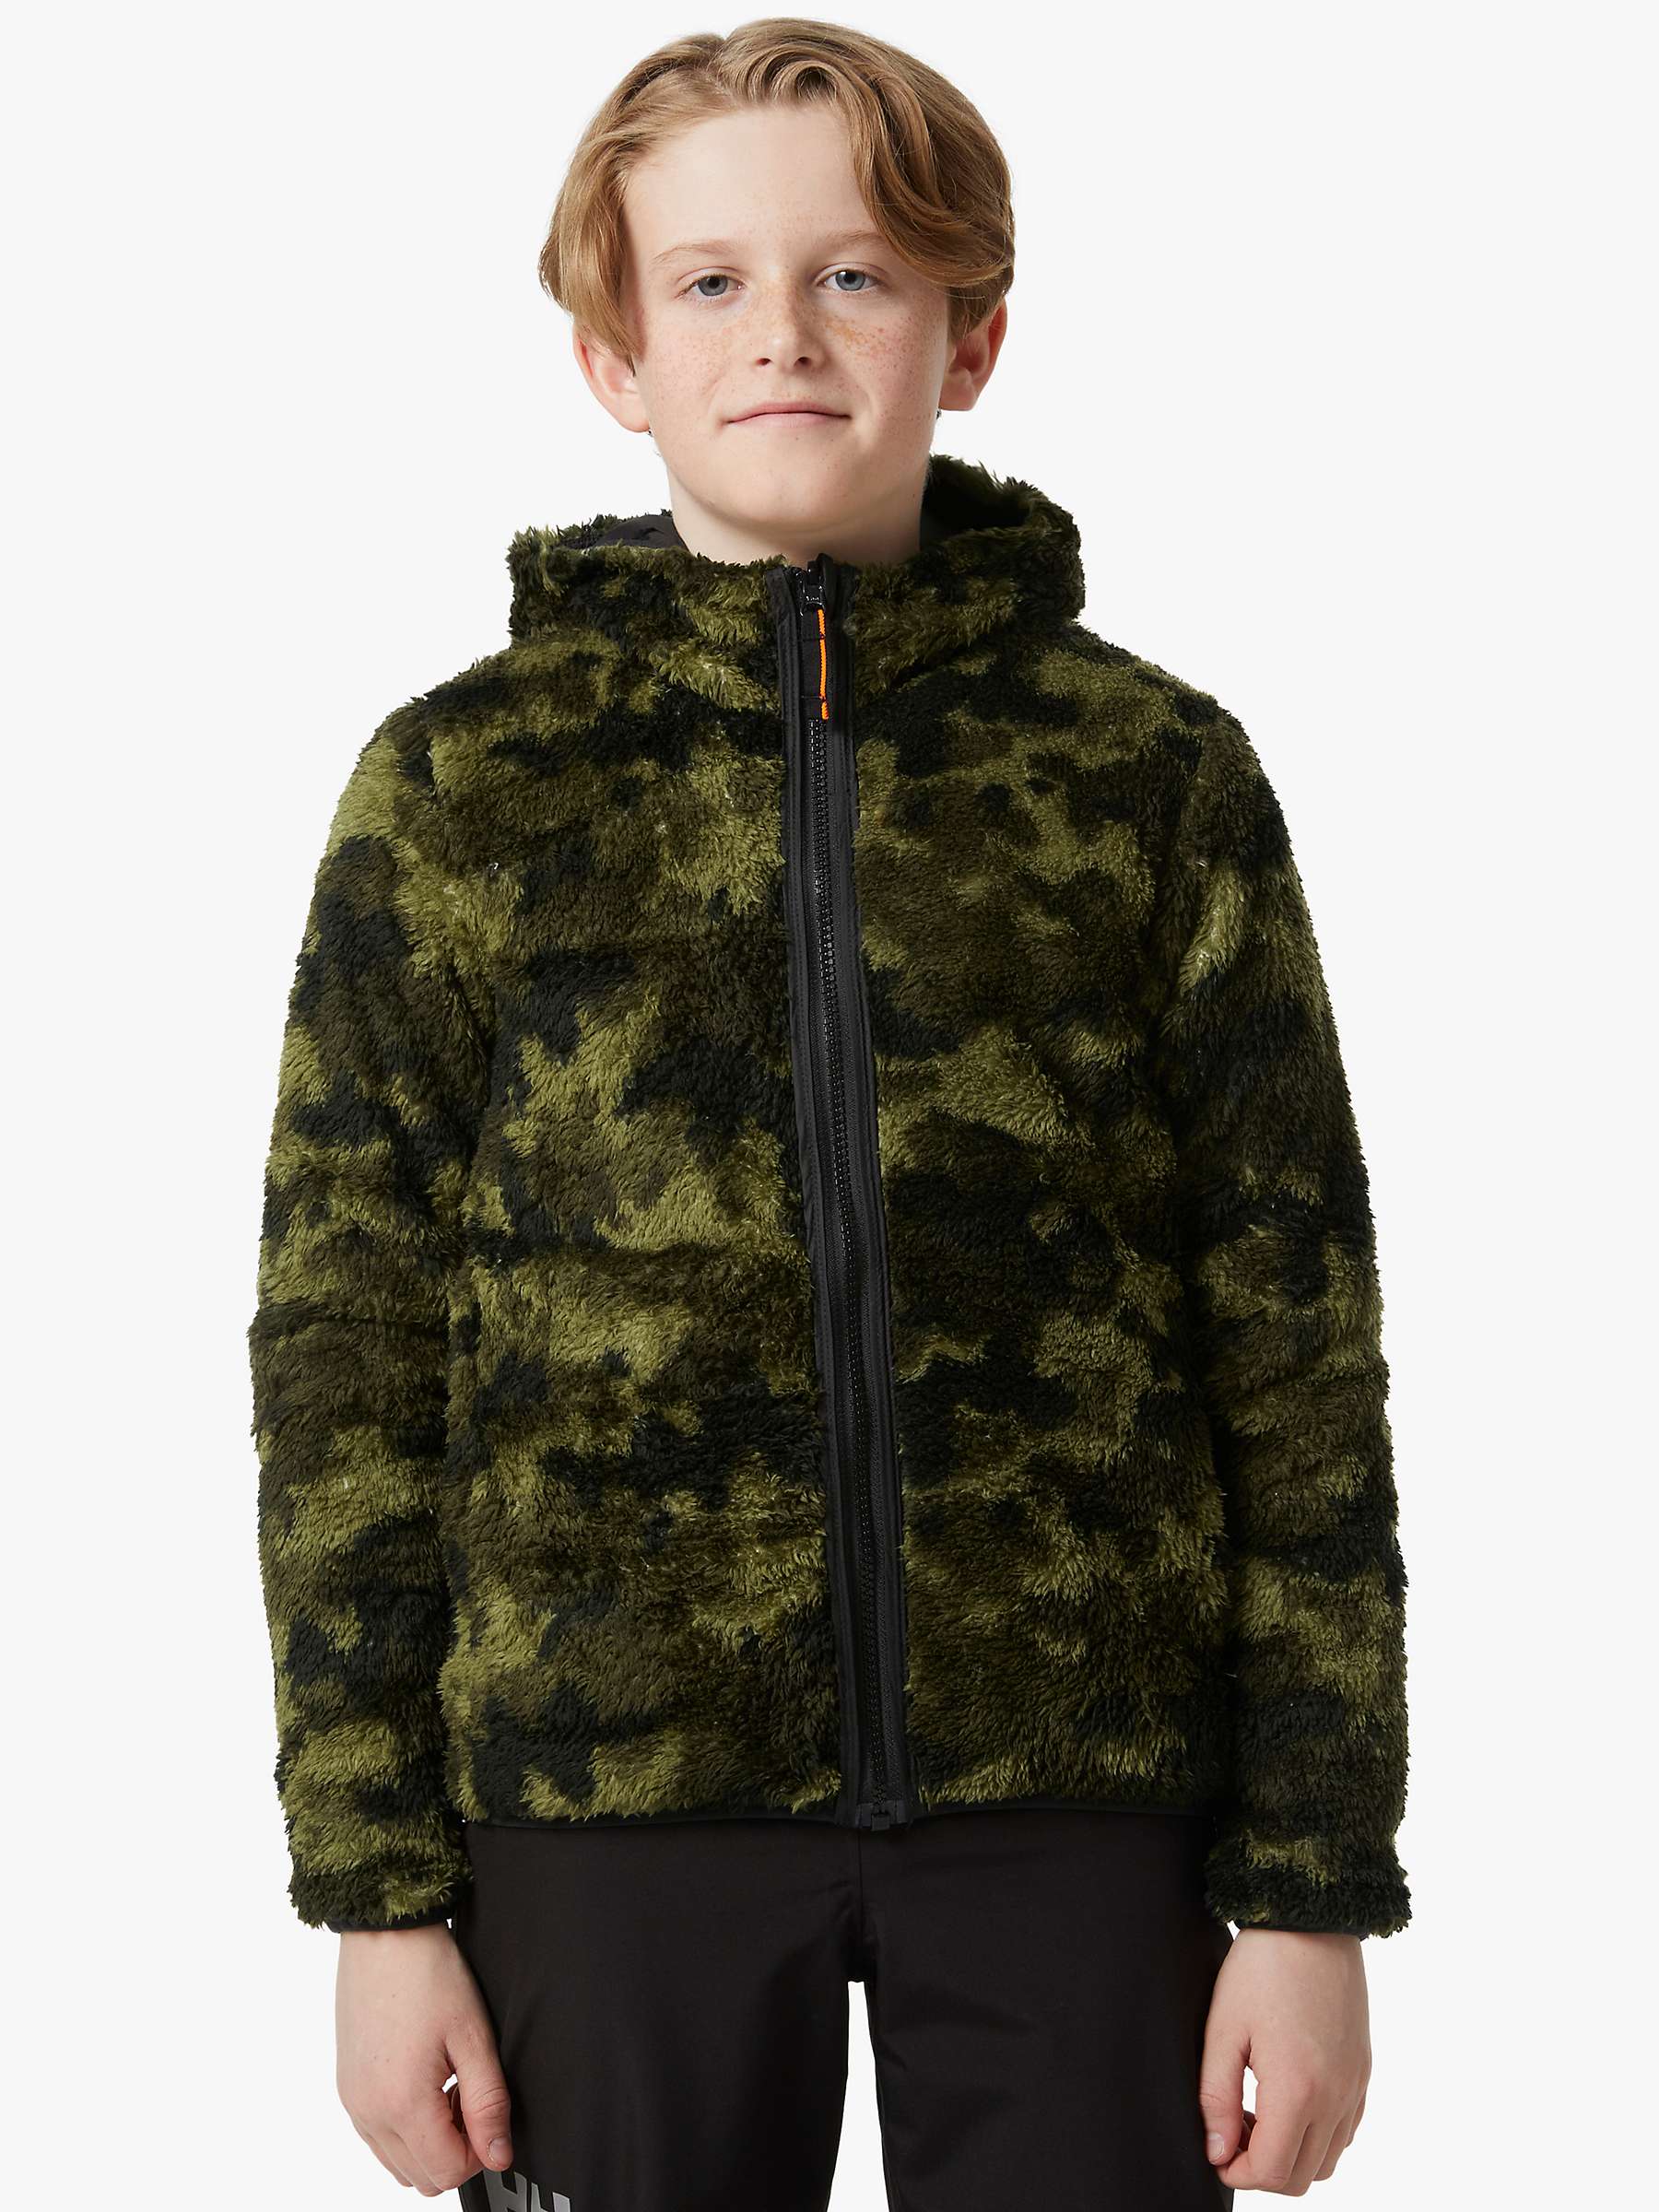 Buy Helly Hansen Kids' Reversible Fleece Lined Coat, Black/Green Online at johnlewis.com